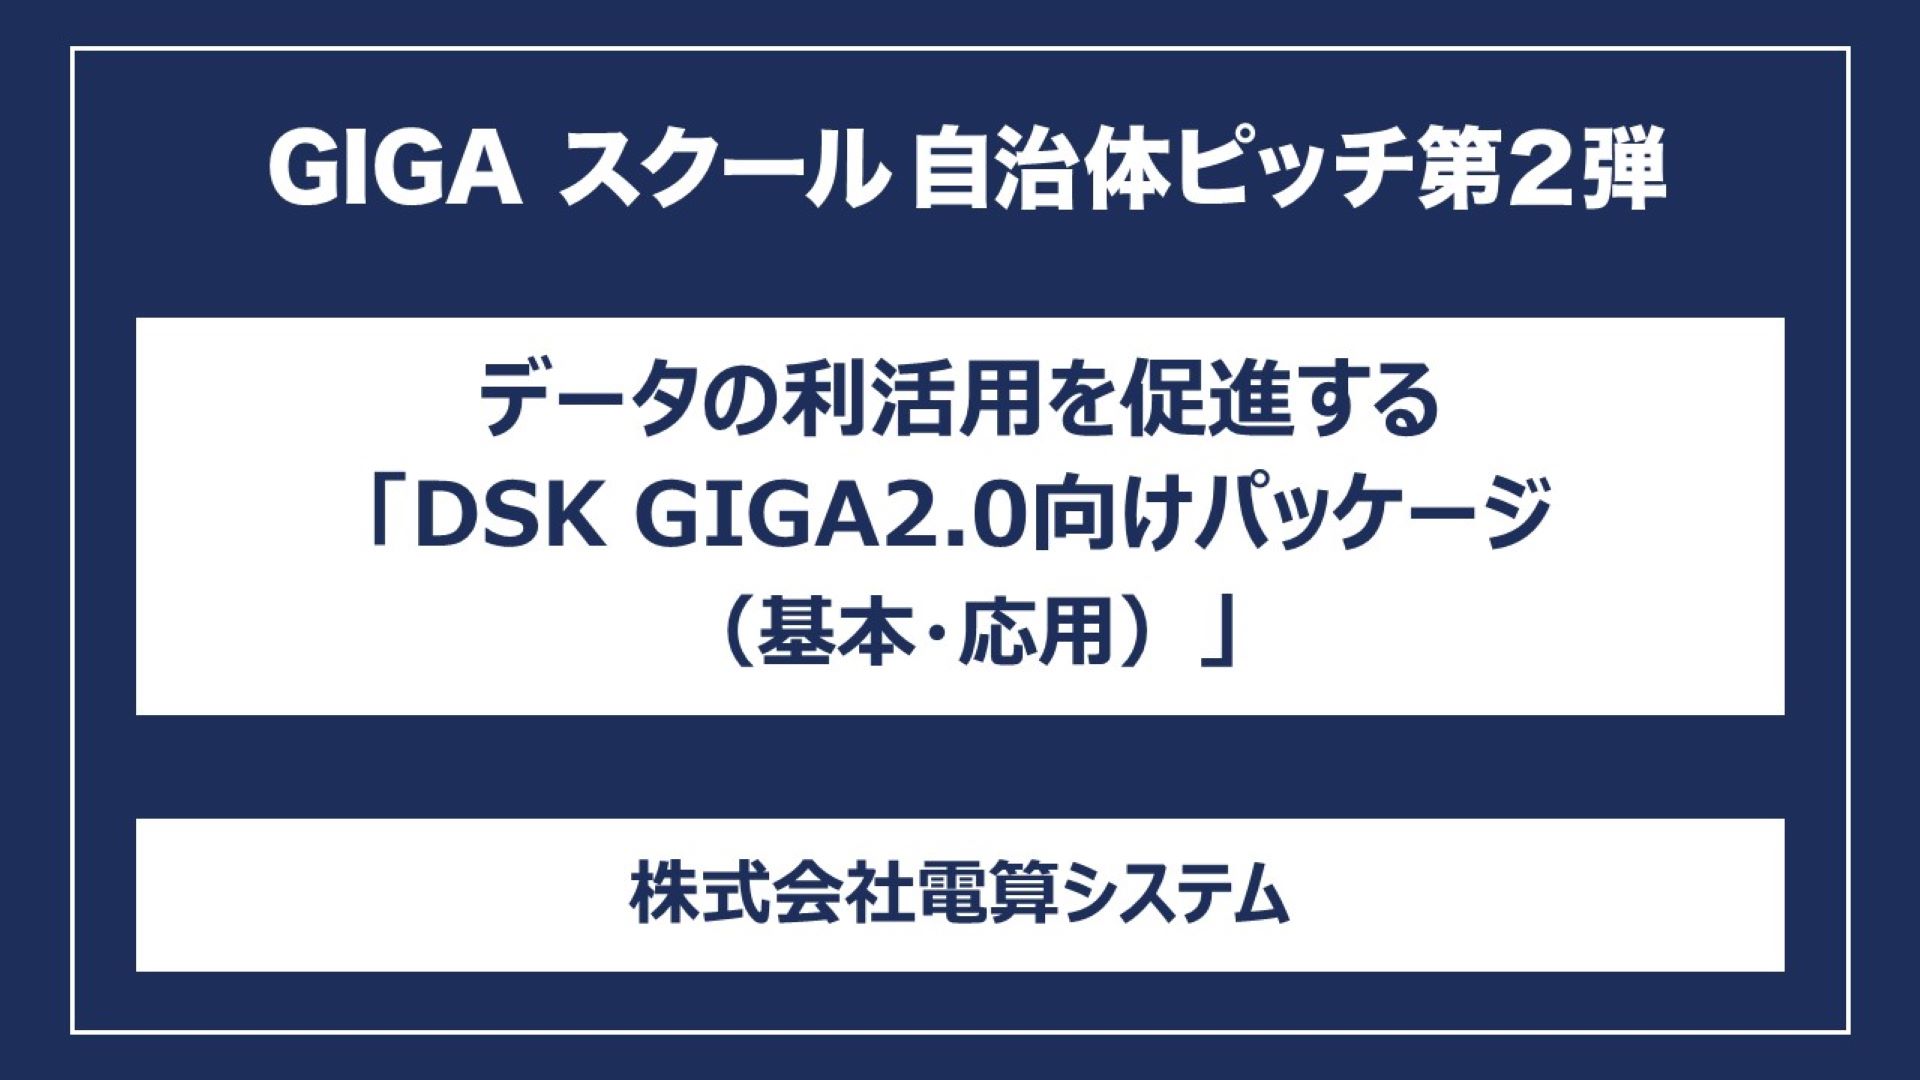 データの利活用を促進する「DSK GIGA2.0向けパッケージ（基本・応用）」